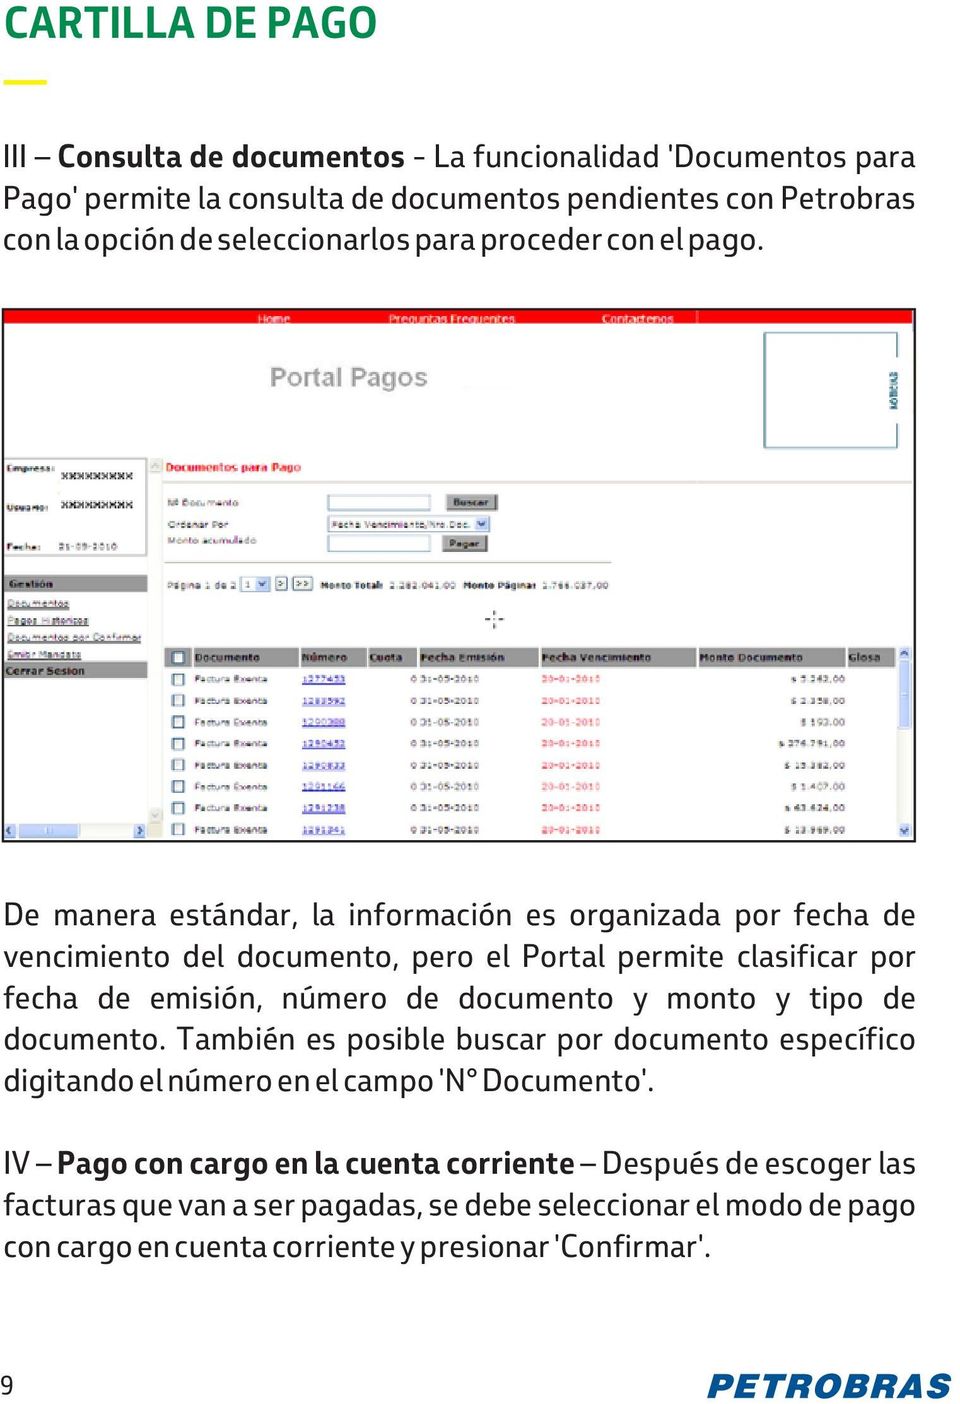 De manera estándar, la información es organizada por fecha de vencimiento del documento, pero el Portal permite clasificar por fecha de emisión, número de documento y